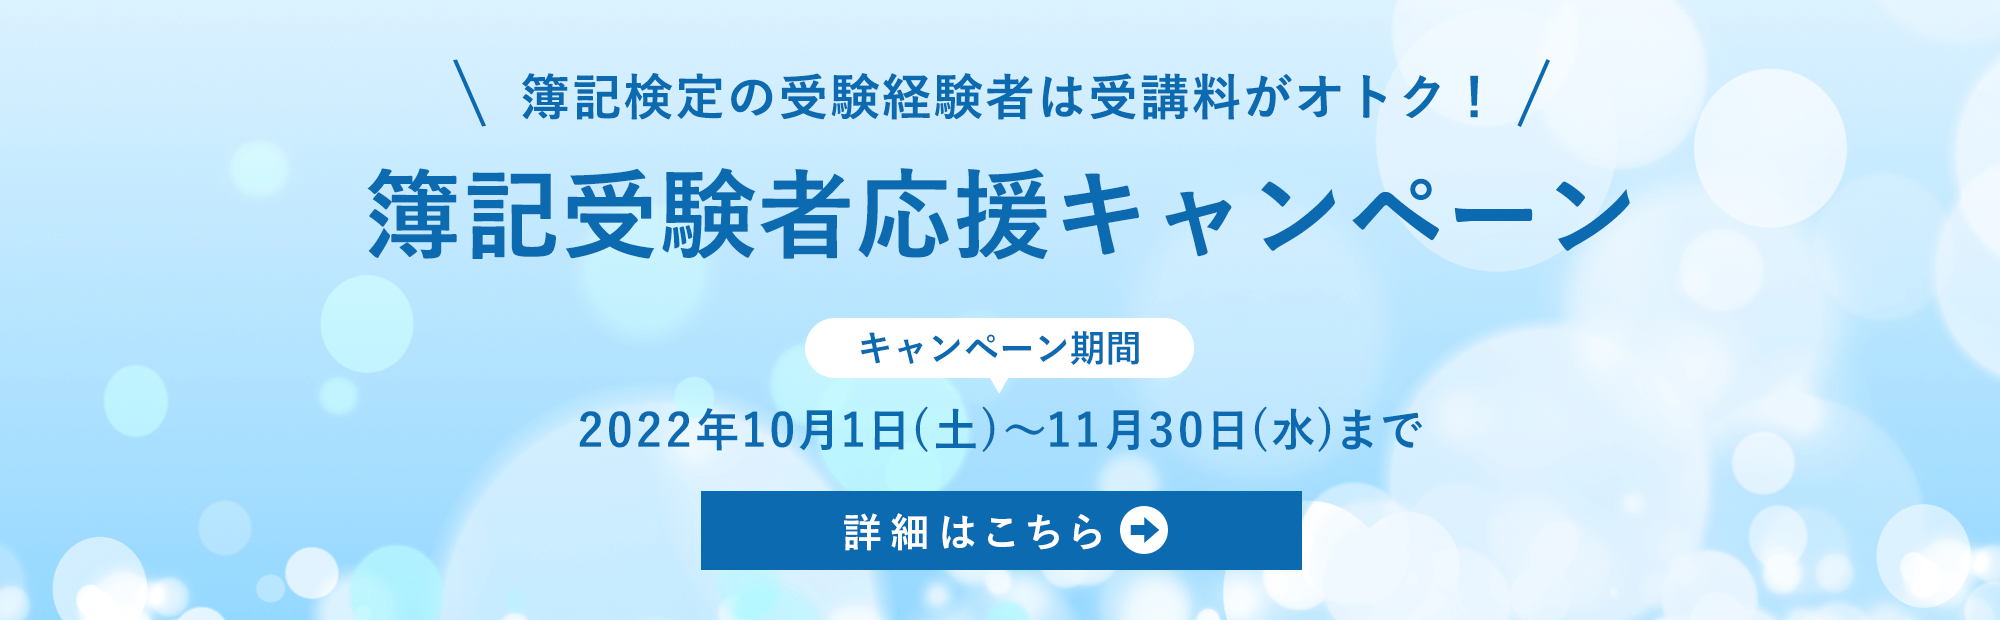 公認会計士簿記受験者応援キャンペーン（10/1(土)～11/30(水)まで）